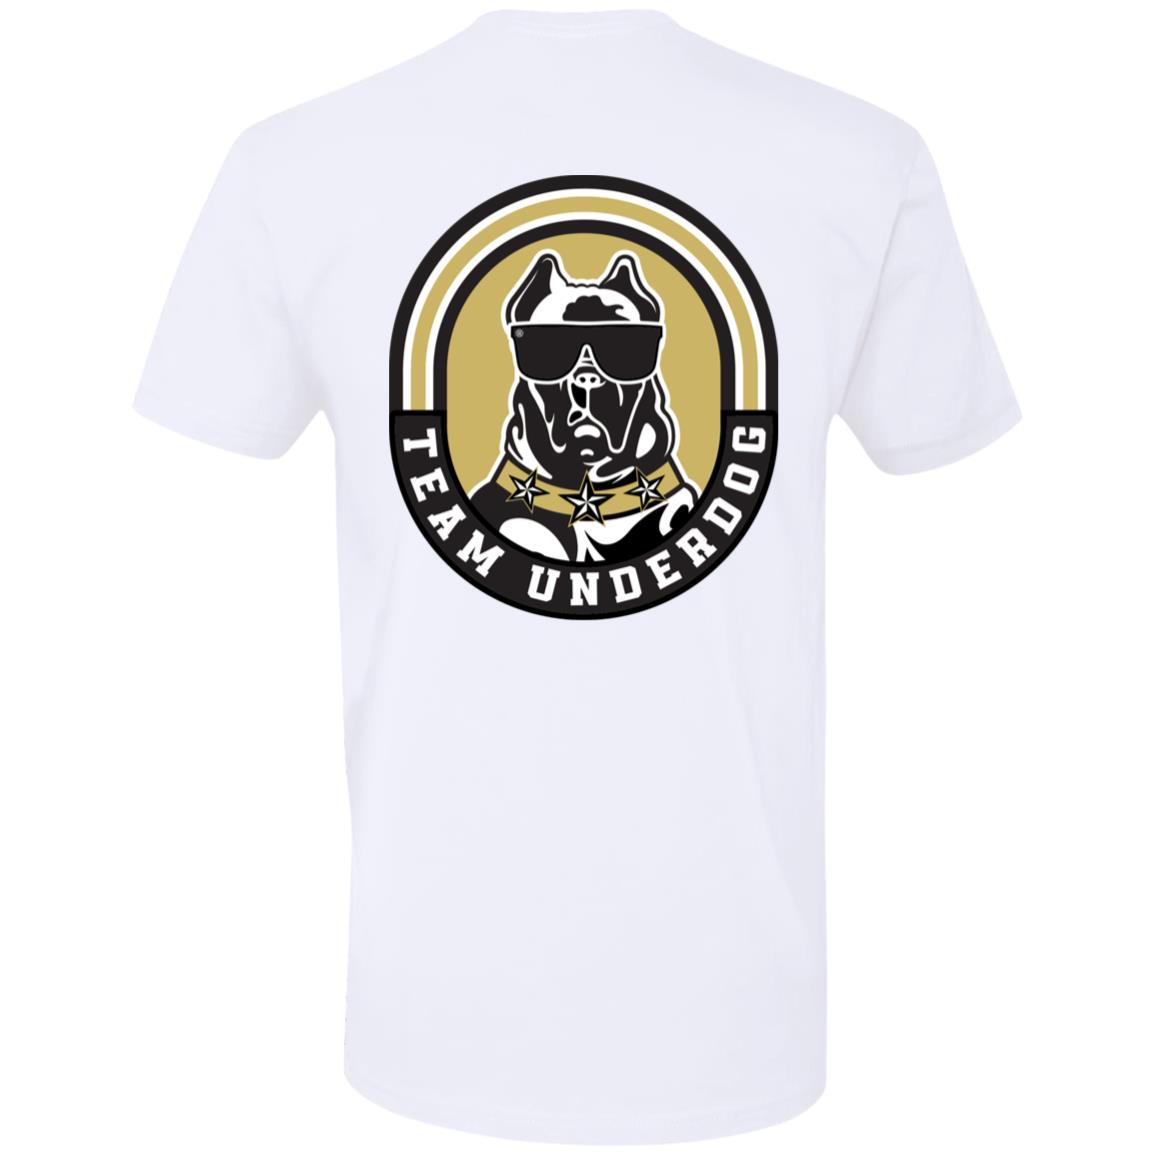 Team Underdog Premium Short Sleeve T-Shirt